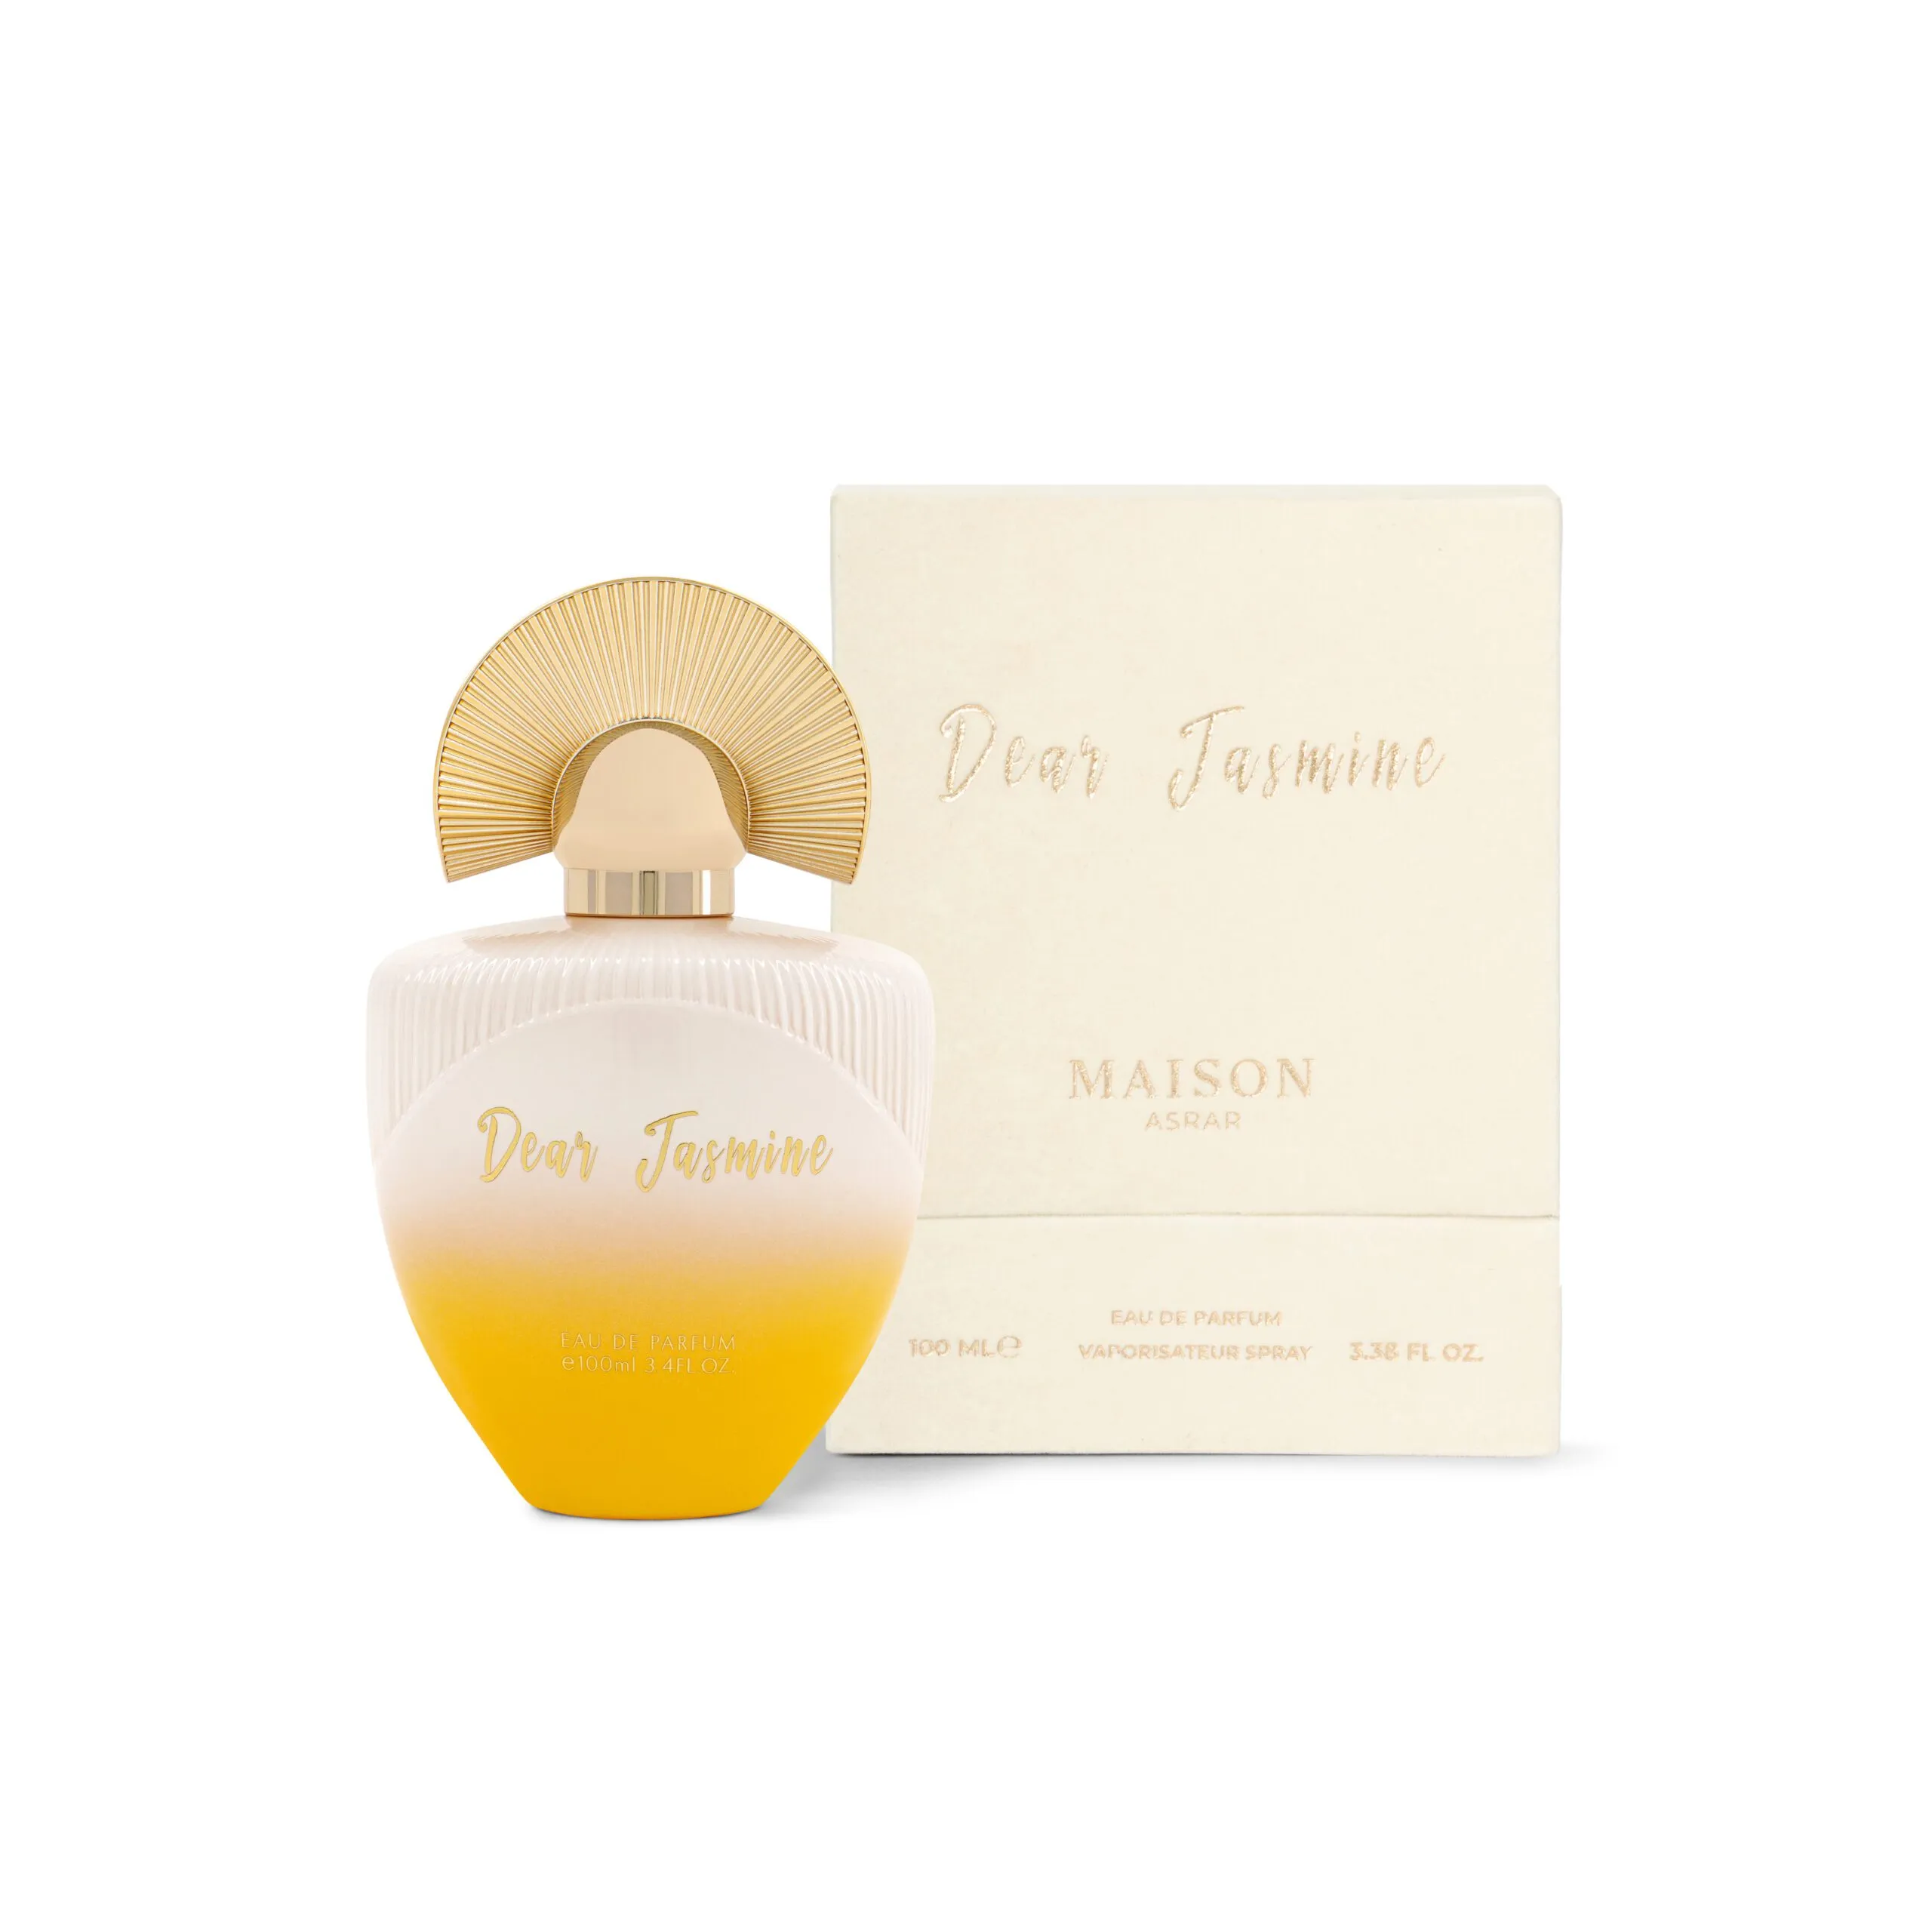 Dear Jasmine – Eau De Parfum